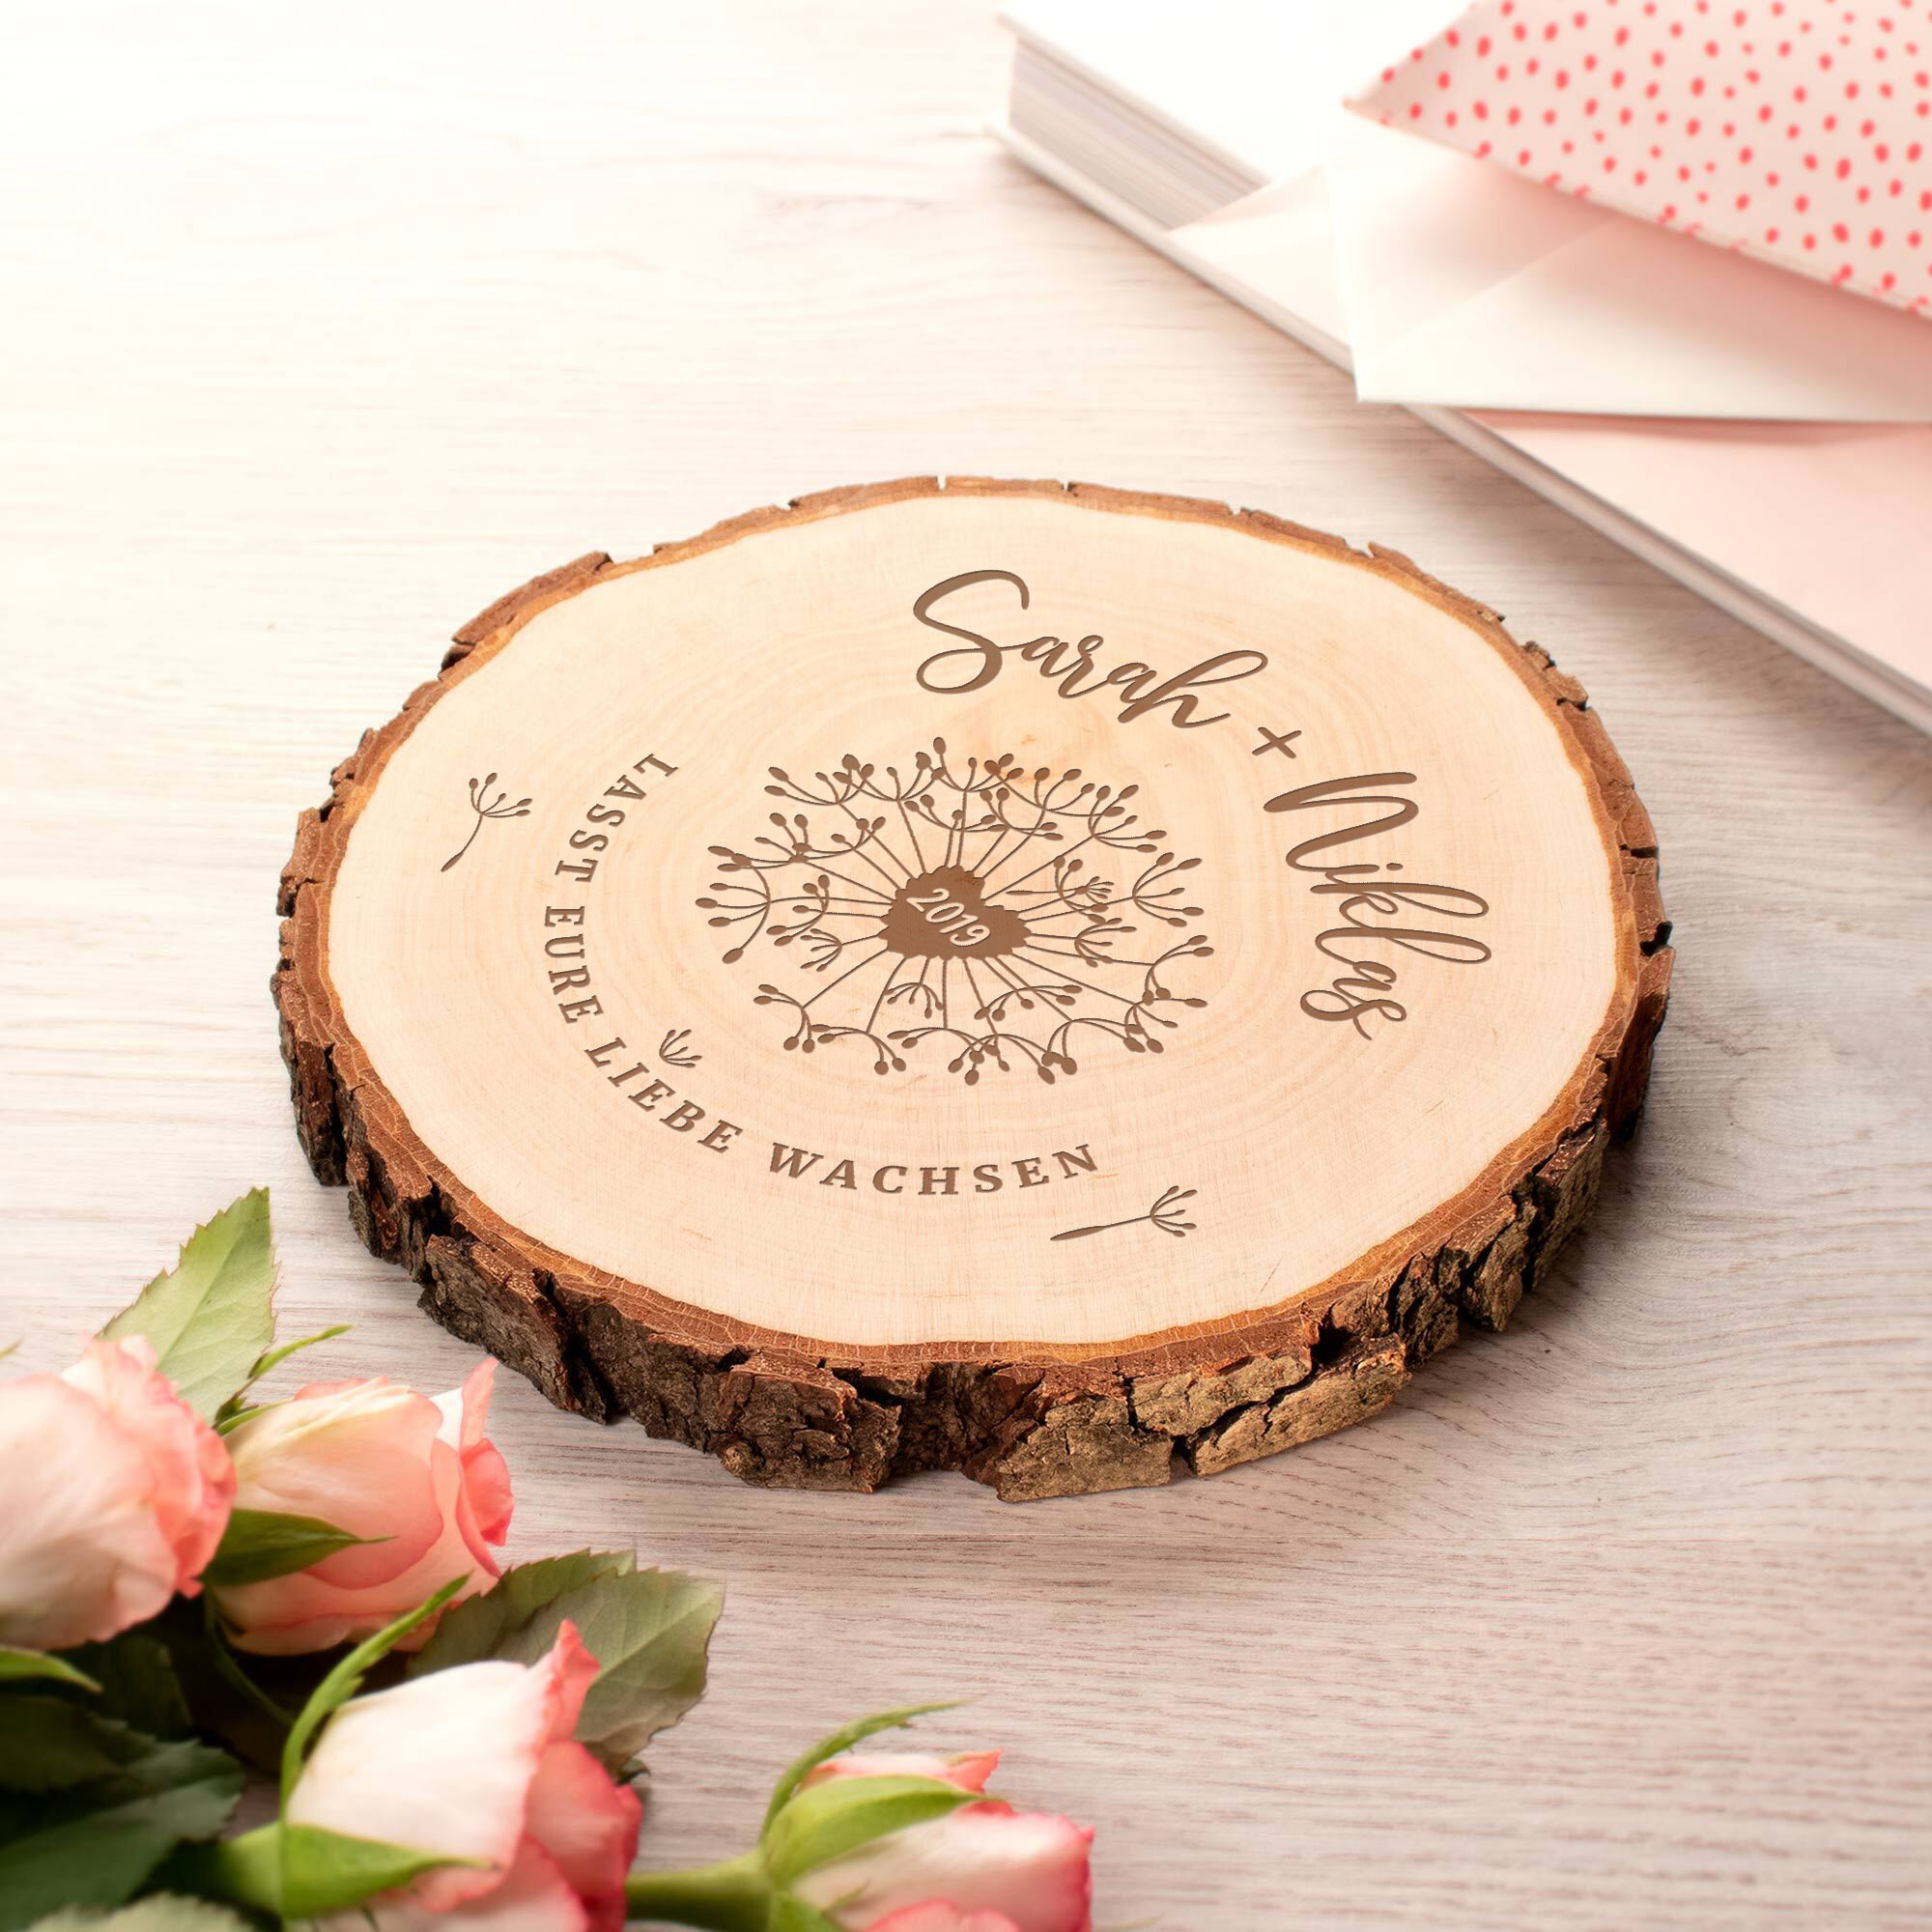 Baumscheibe mit Gravur zur Hochzeit - Pusteblume ist personalisiertes Hochzeitsgeschenk aus Holz zur Trauung und Hochzeitsdekoration für Tischdeko